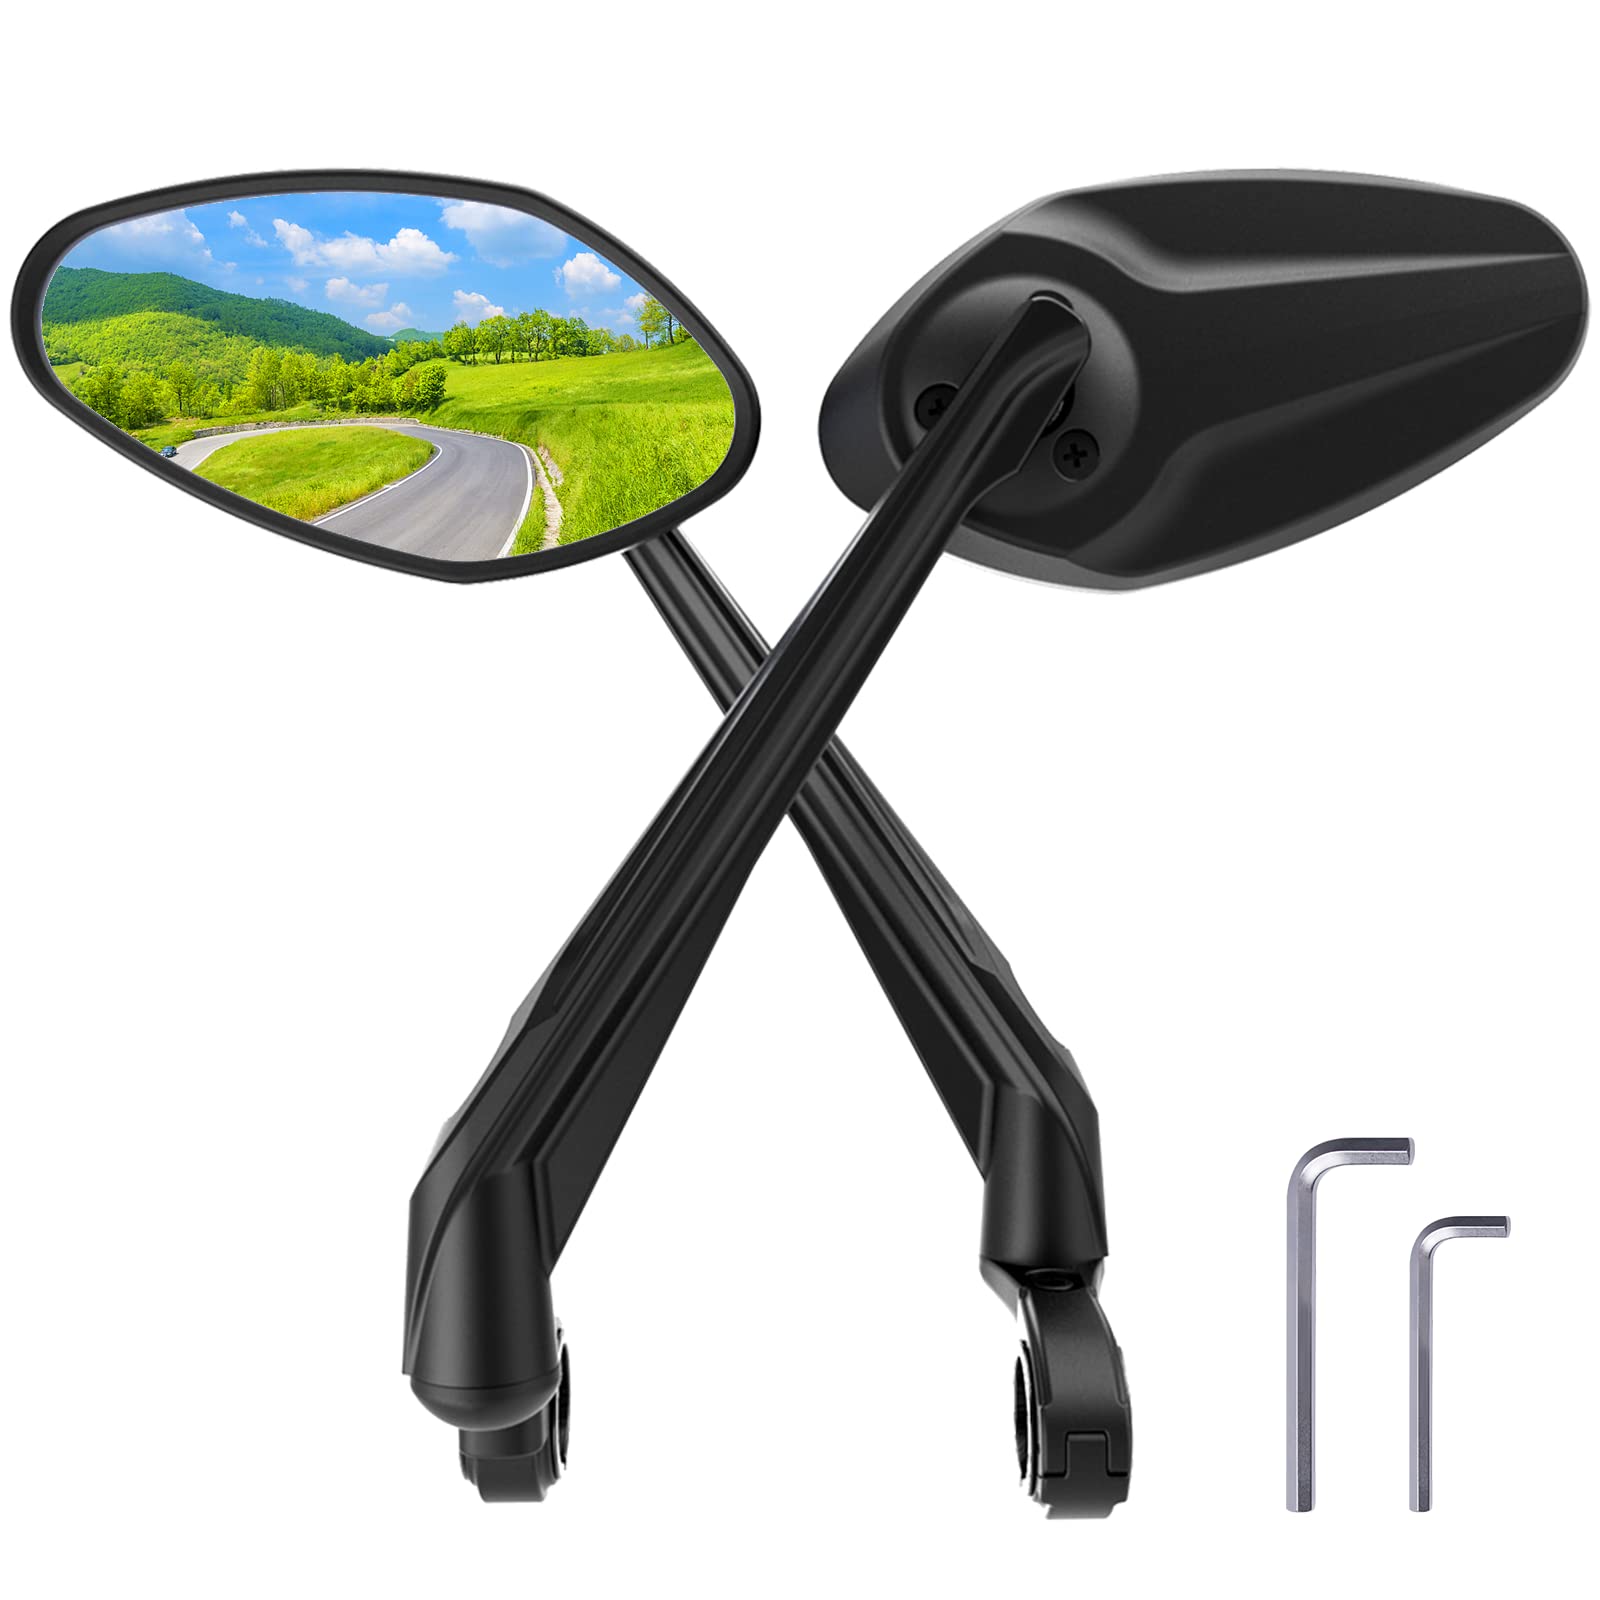 RBRL Fahrradspiegel Extra Große Spiegelfläche, 360° verstellbarer Rückspiegel, schlagfestes Echtglas Fahrrad Rückspiegel, Universal Fahrrad Spiegel für e-bike Links Fahrradrückspiegel (links + rechts) von RBRL